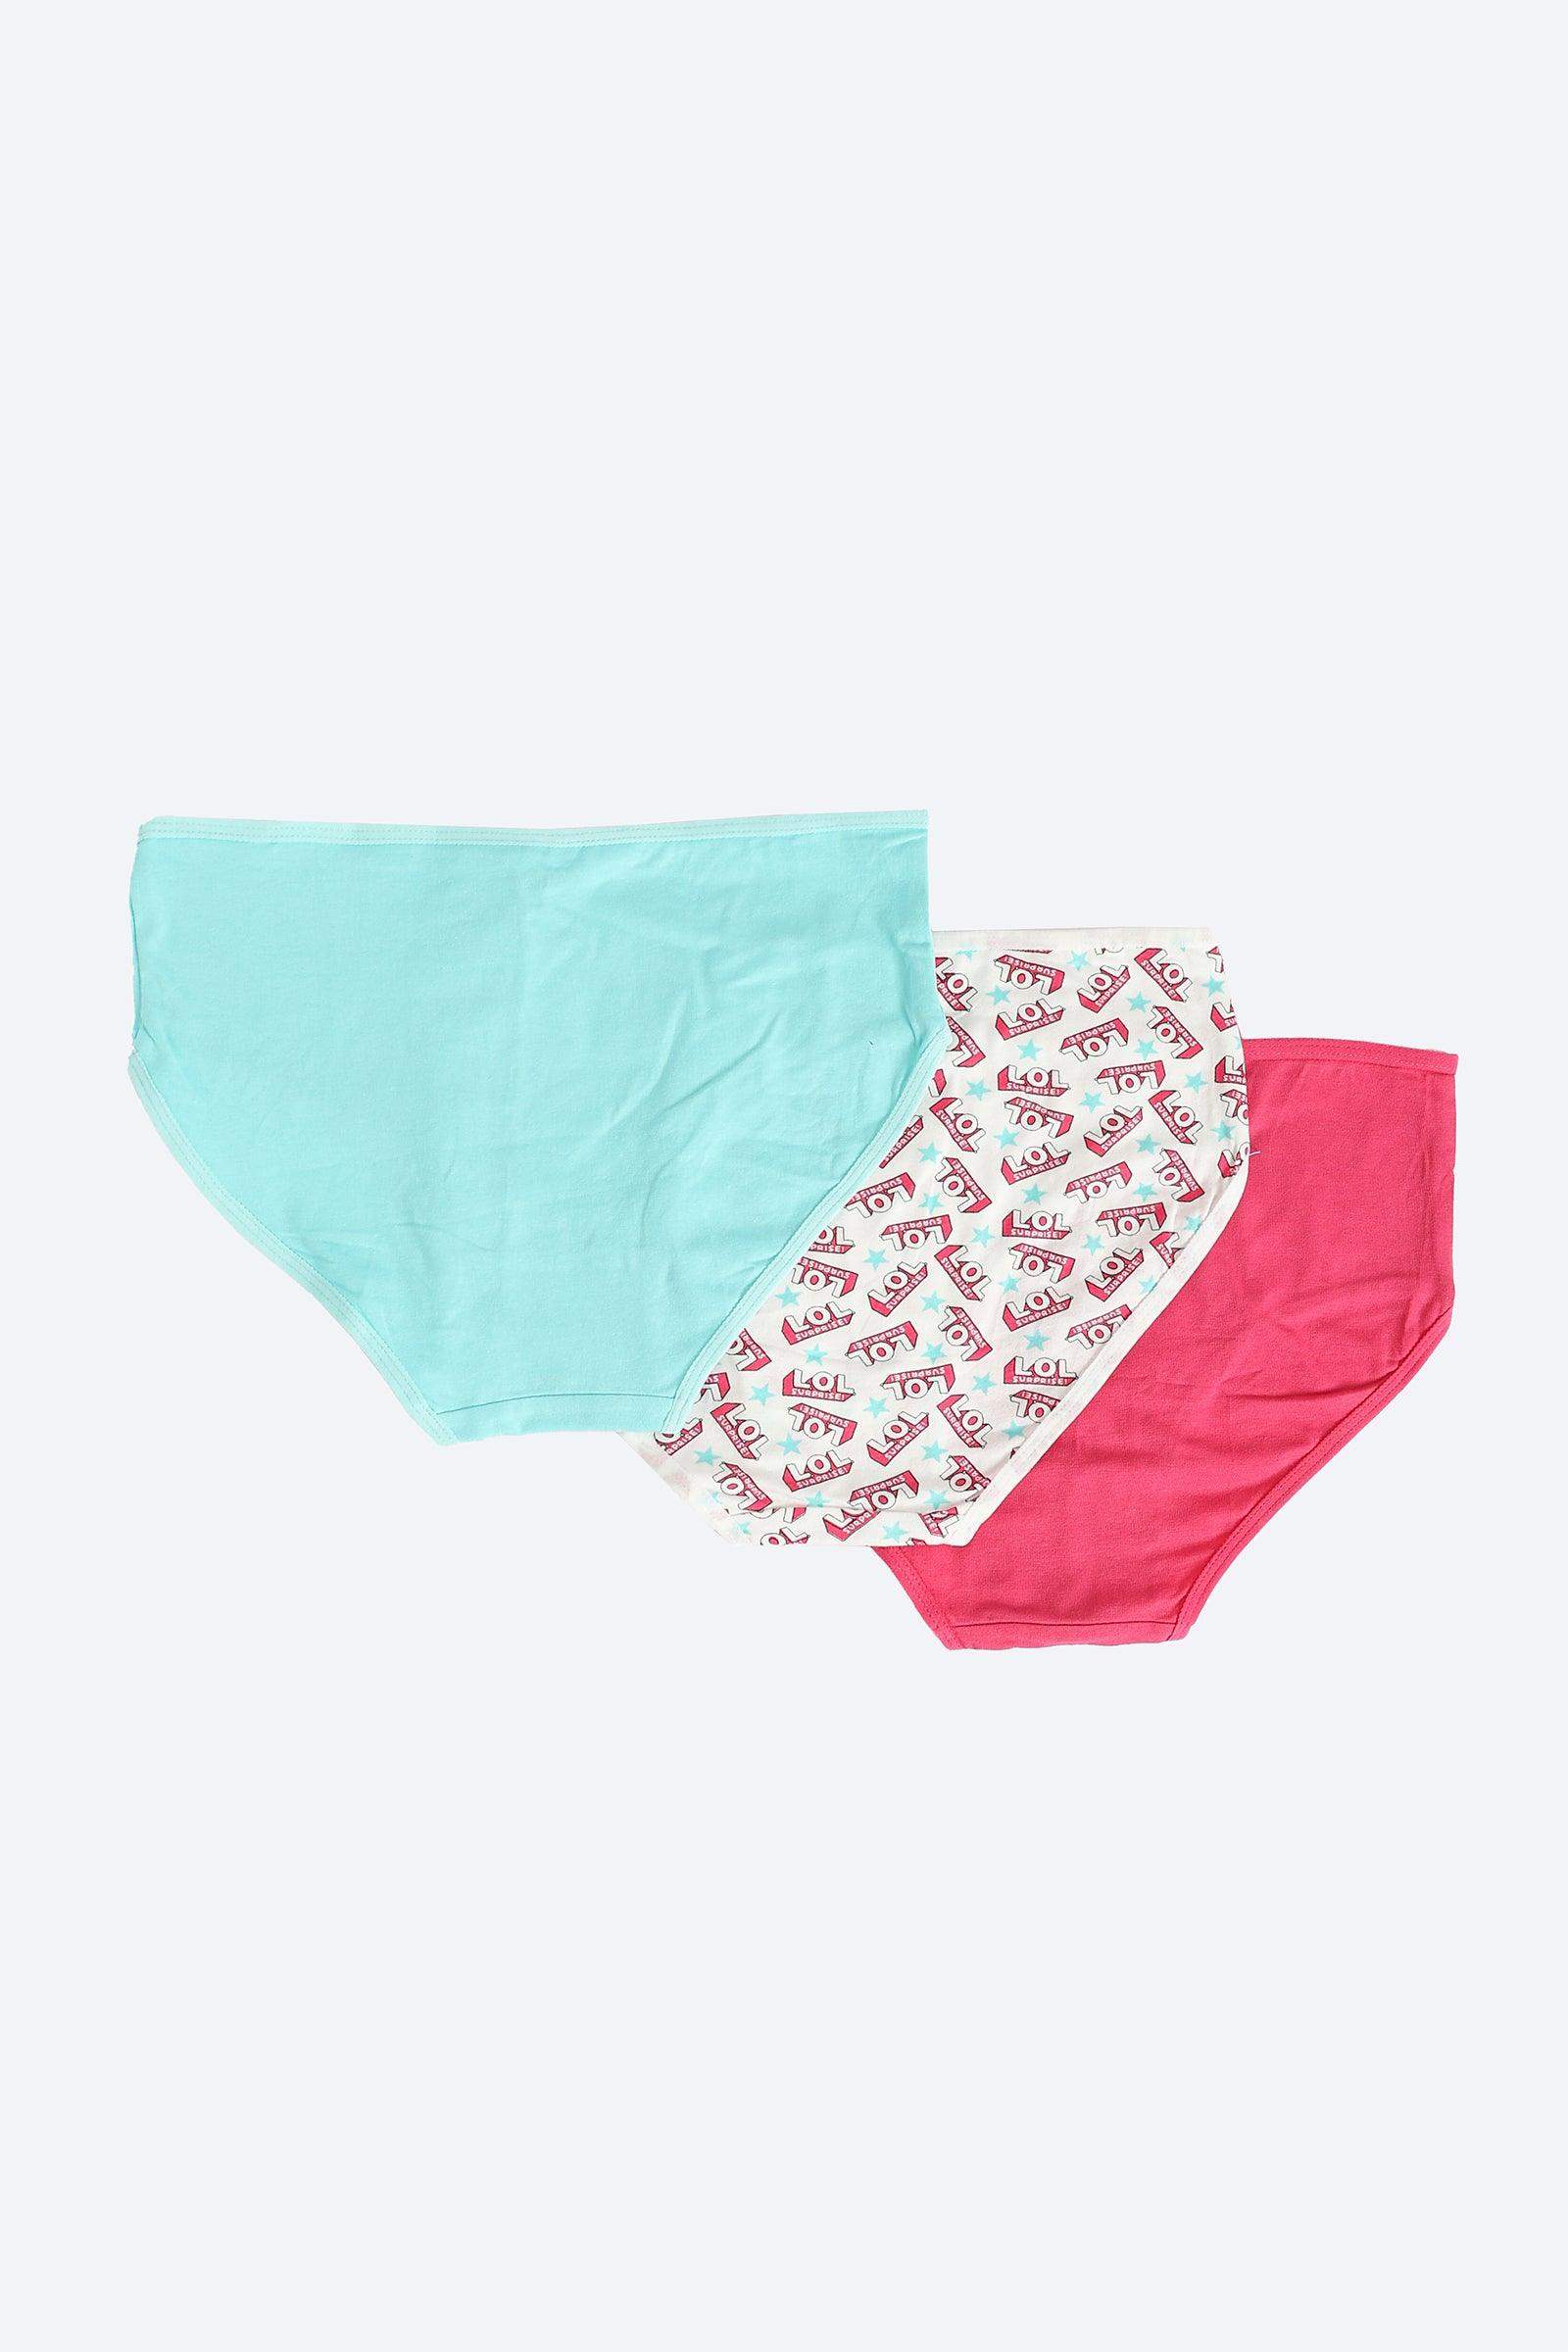 Pack of 10 Colored Brief Panties